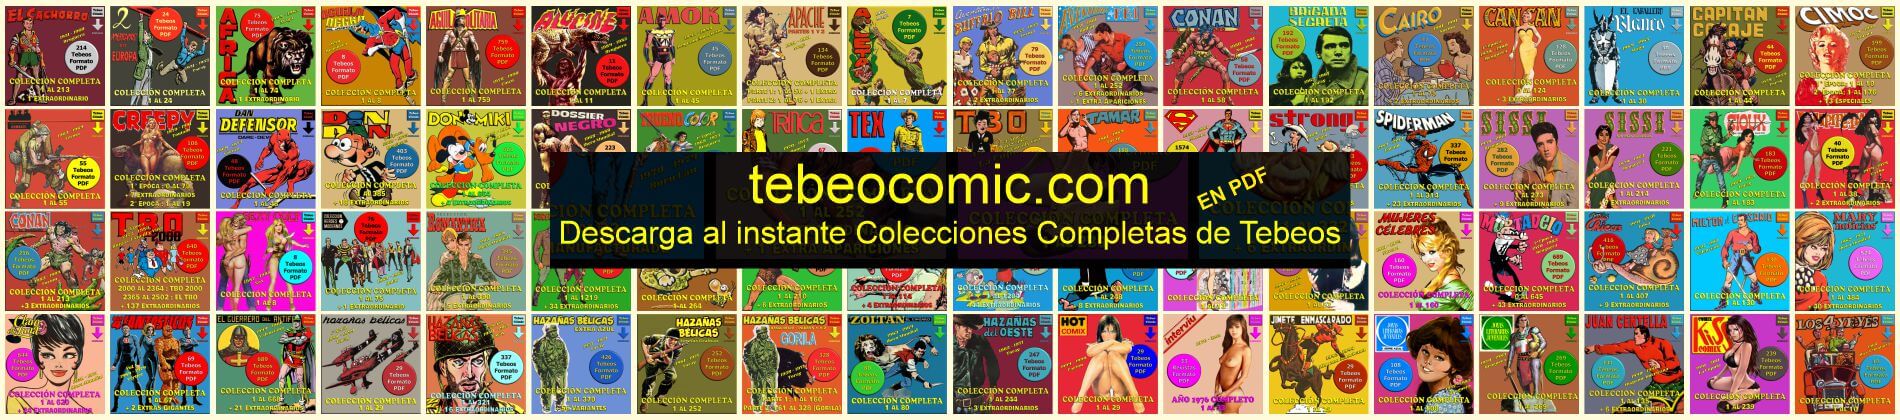 Tebeocomic - Descarga Inmediata de Colecciones de Tebeos